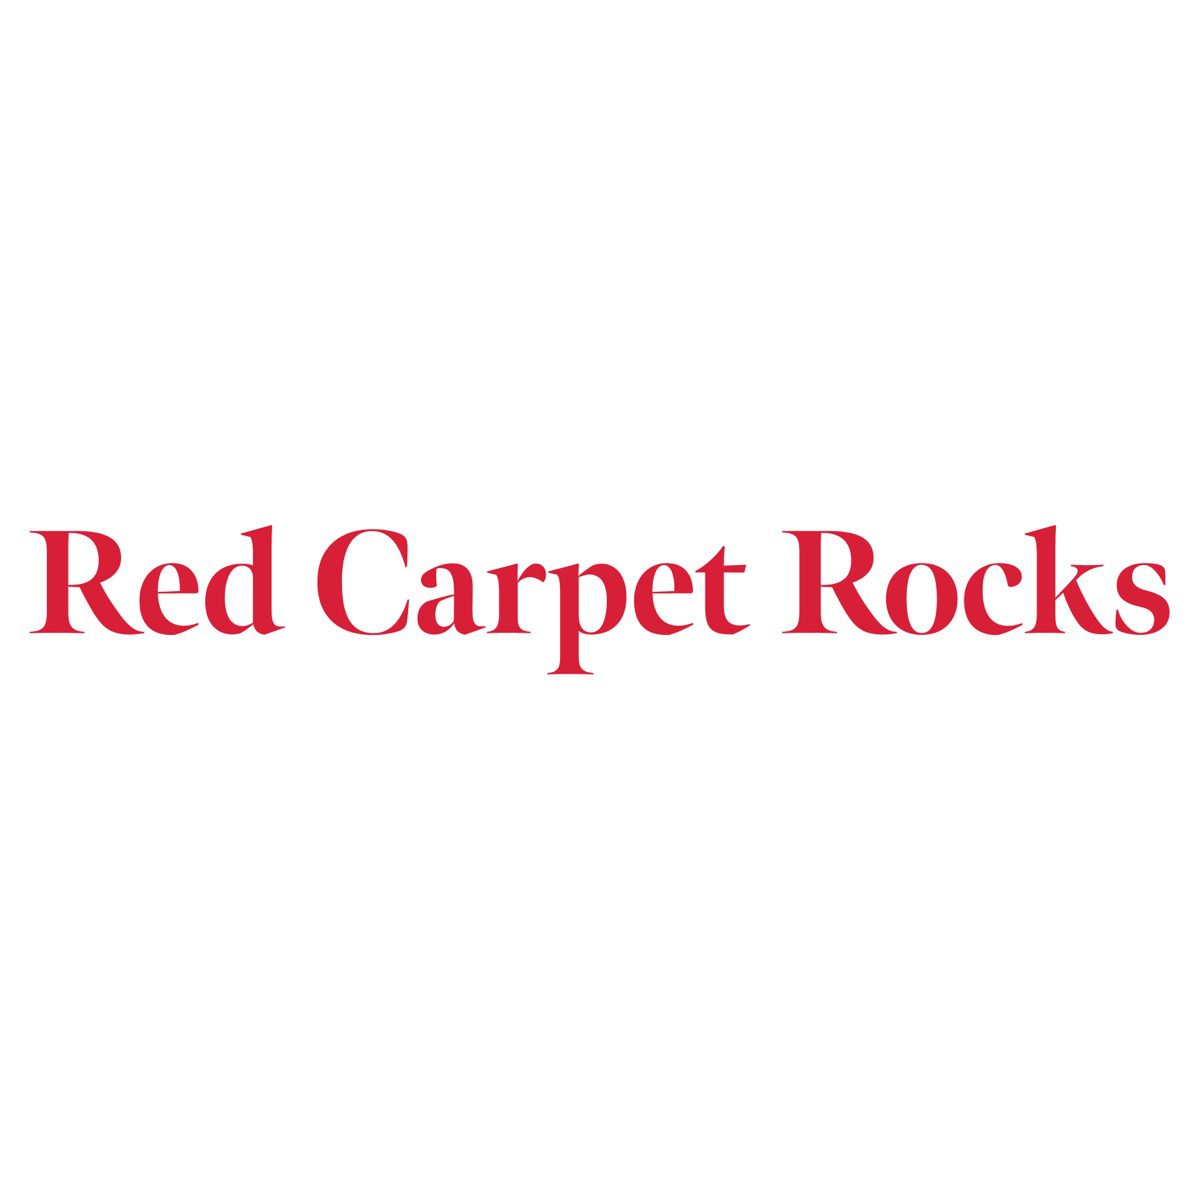 Red Carpet Rocks - Franchise Opportunities